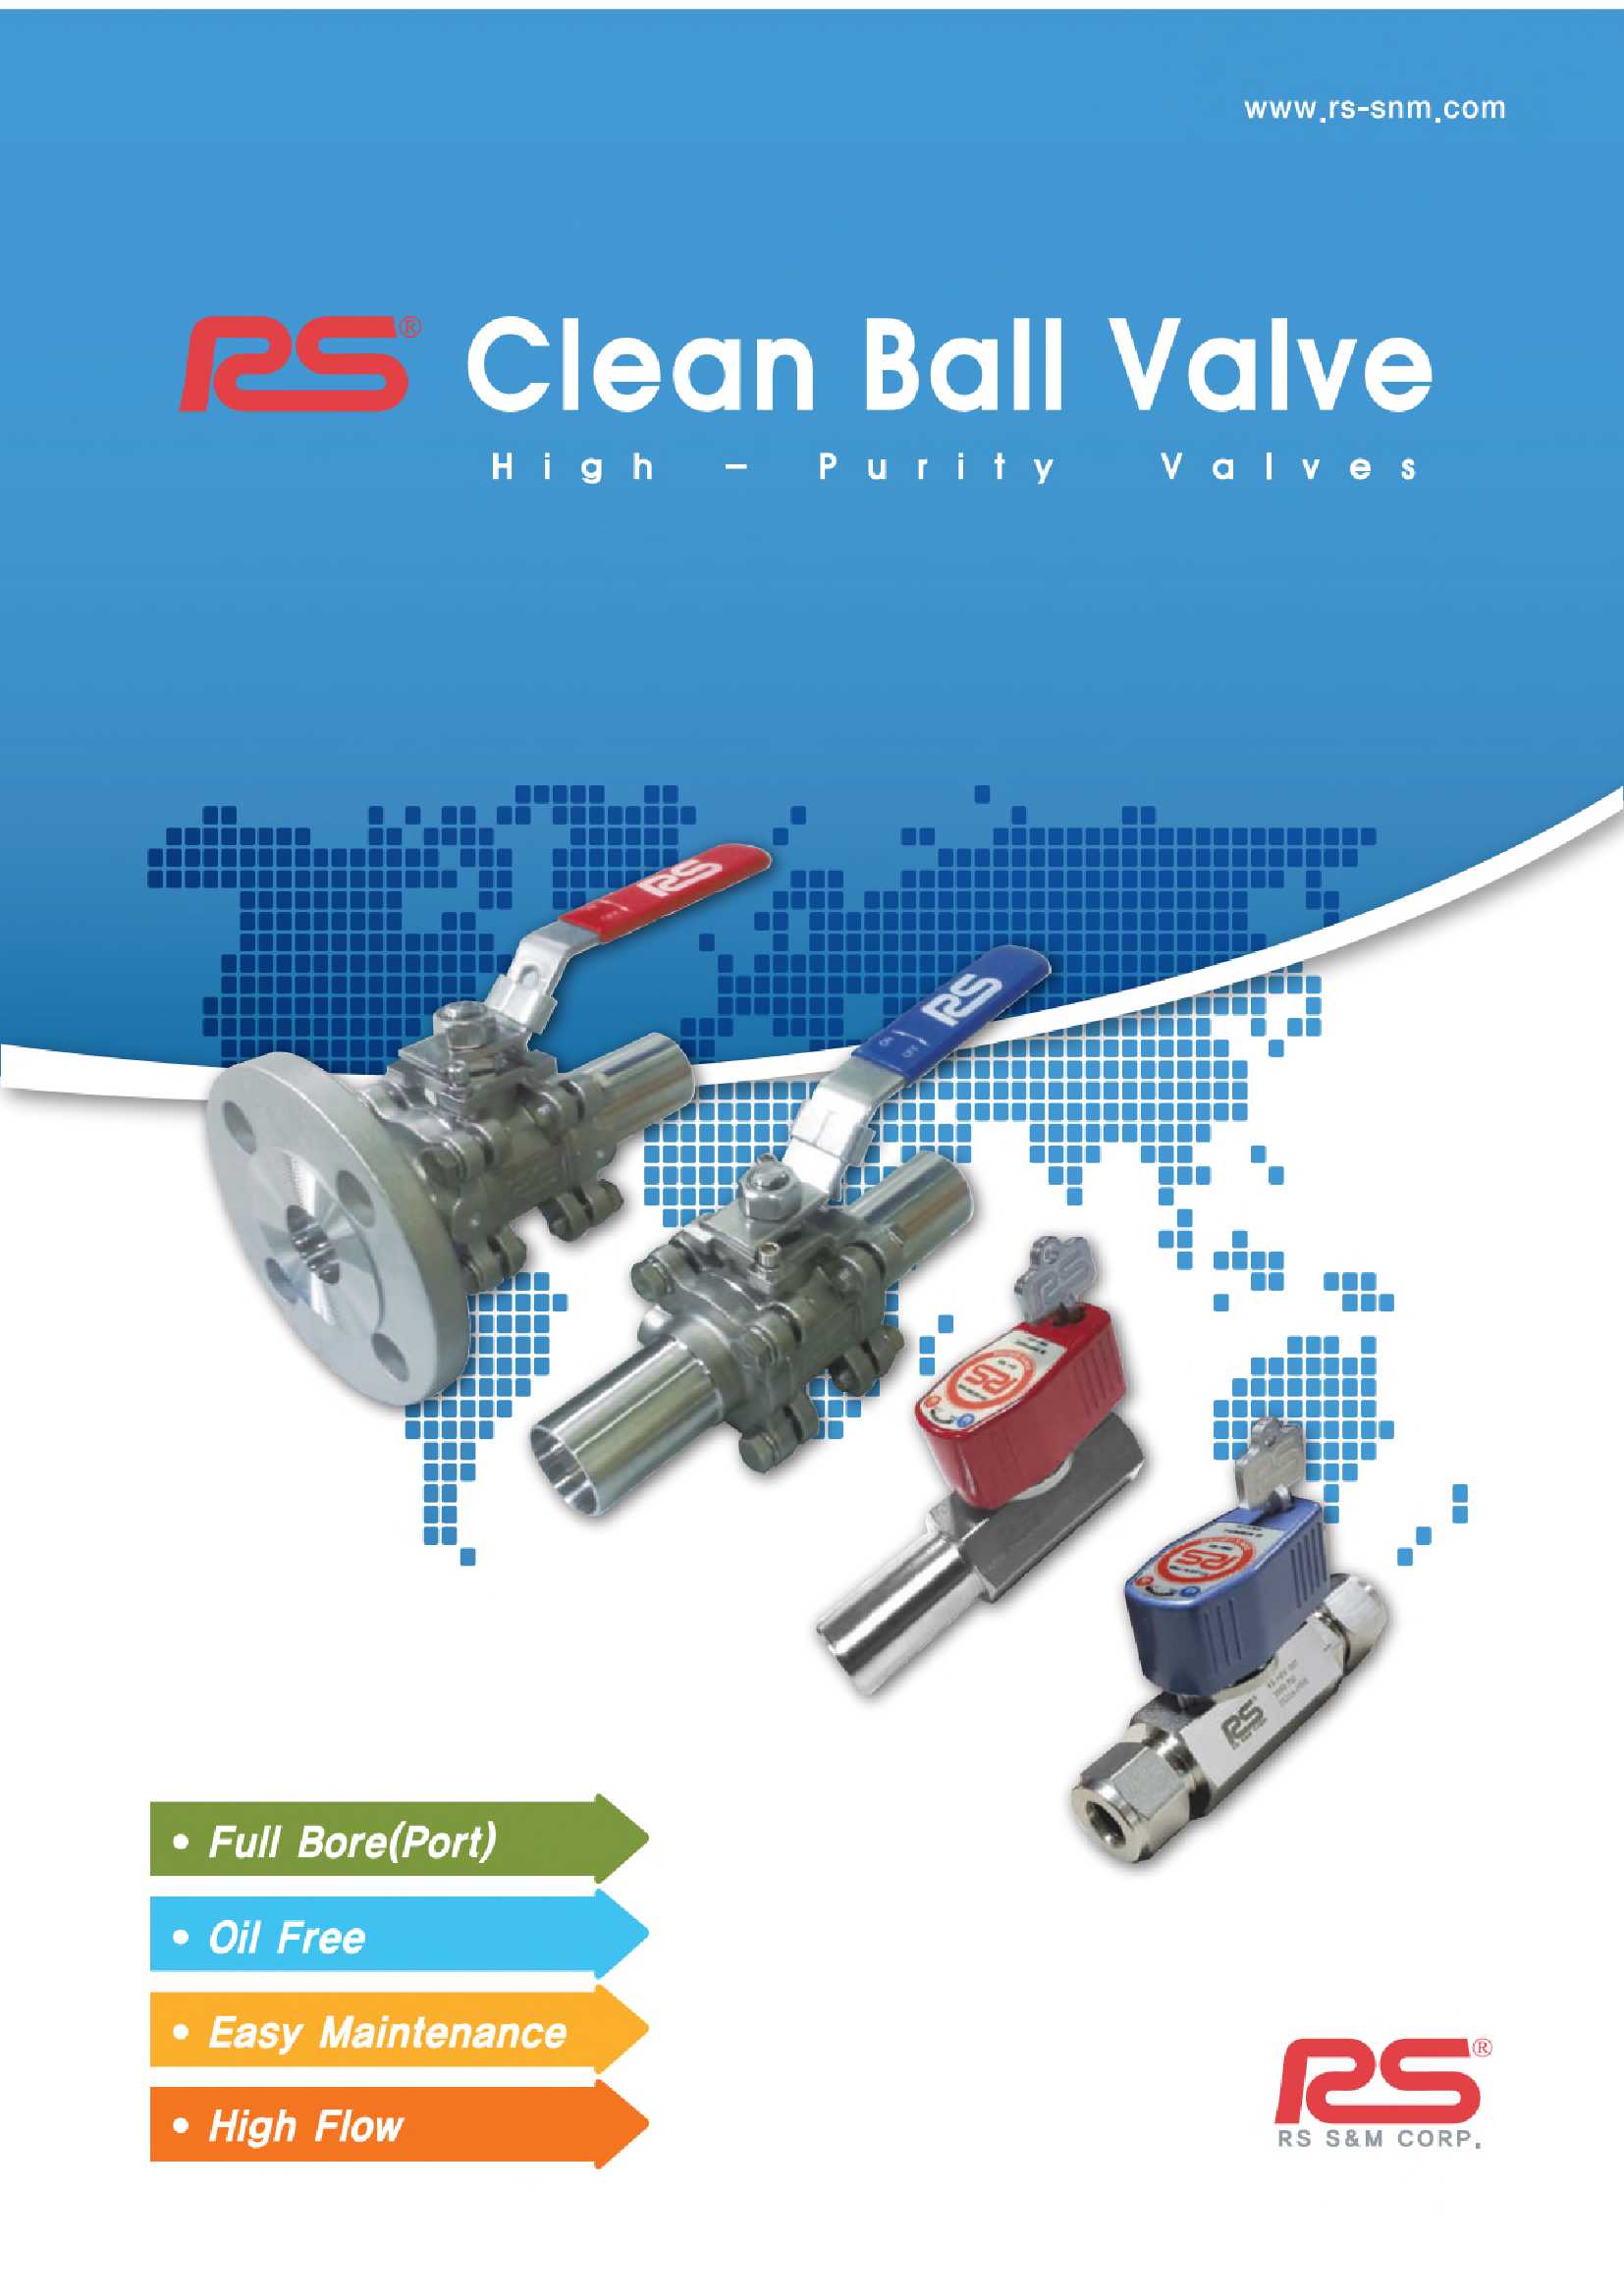 RS Clean Ball Valve